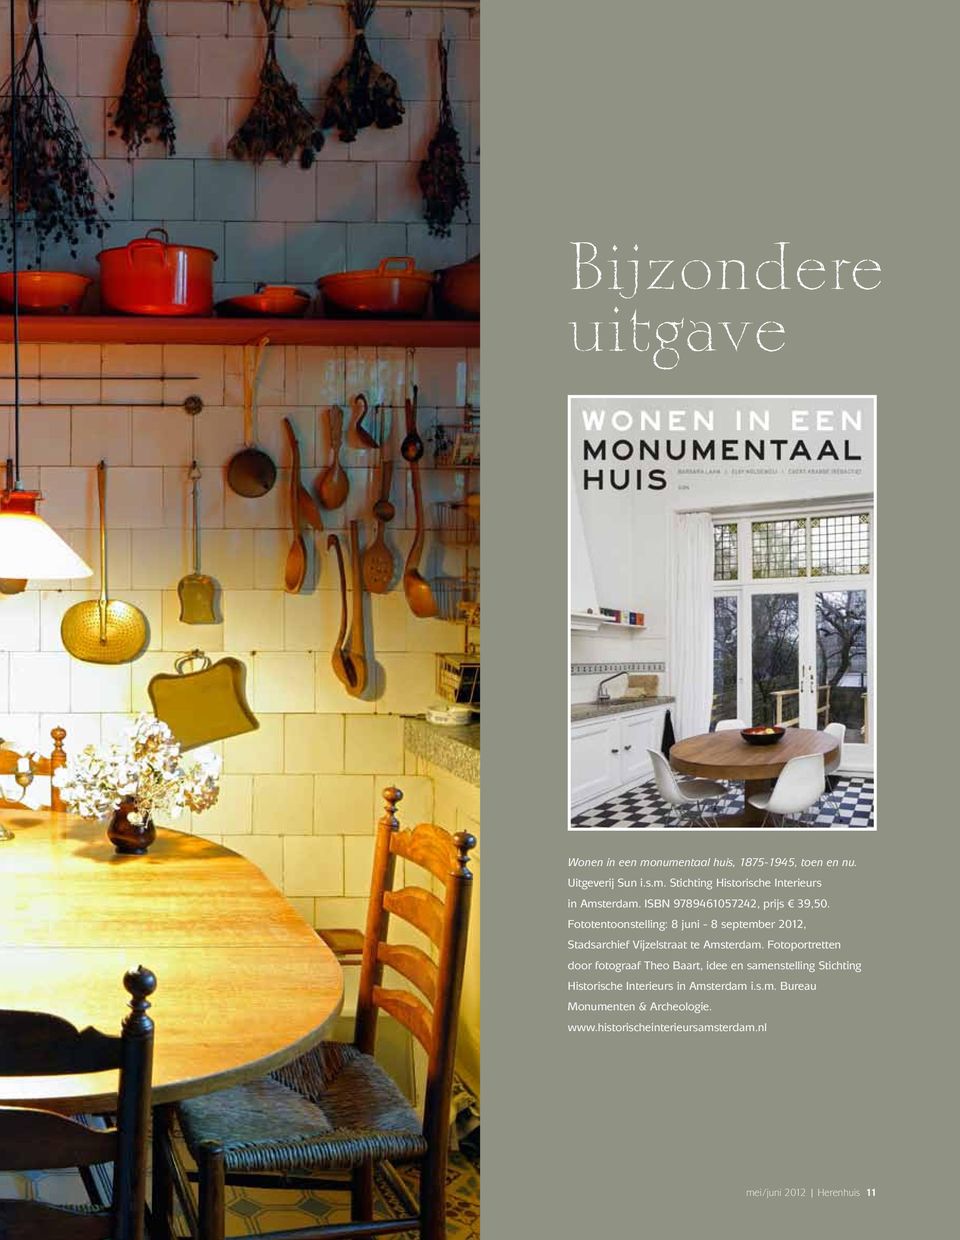 Fotoportretten door fotograaf Theo Baart, idee en samenstelling Stichting Historische Interieurs in Amsterdam i.s.m. Bureau Monumenten & Archeologie.